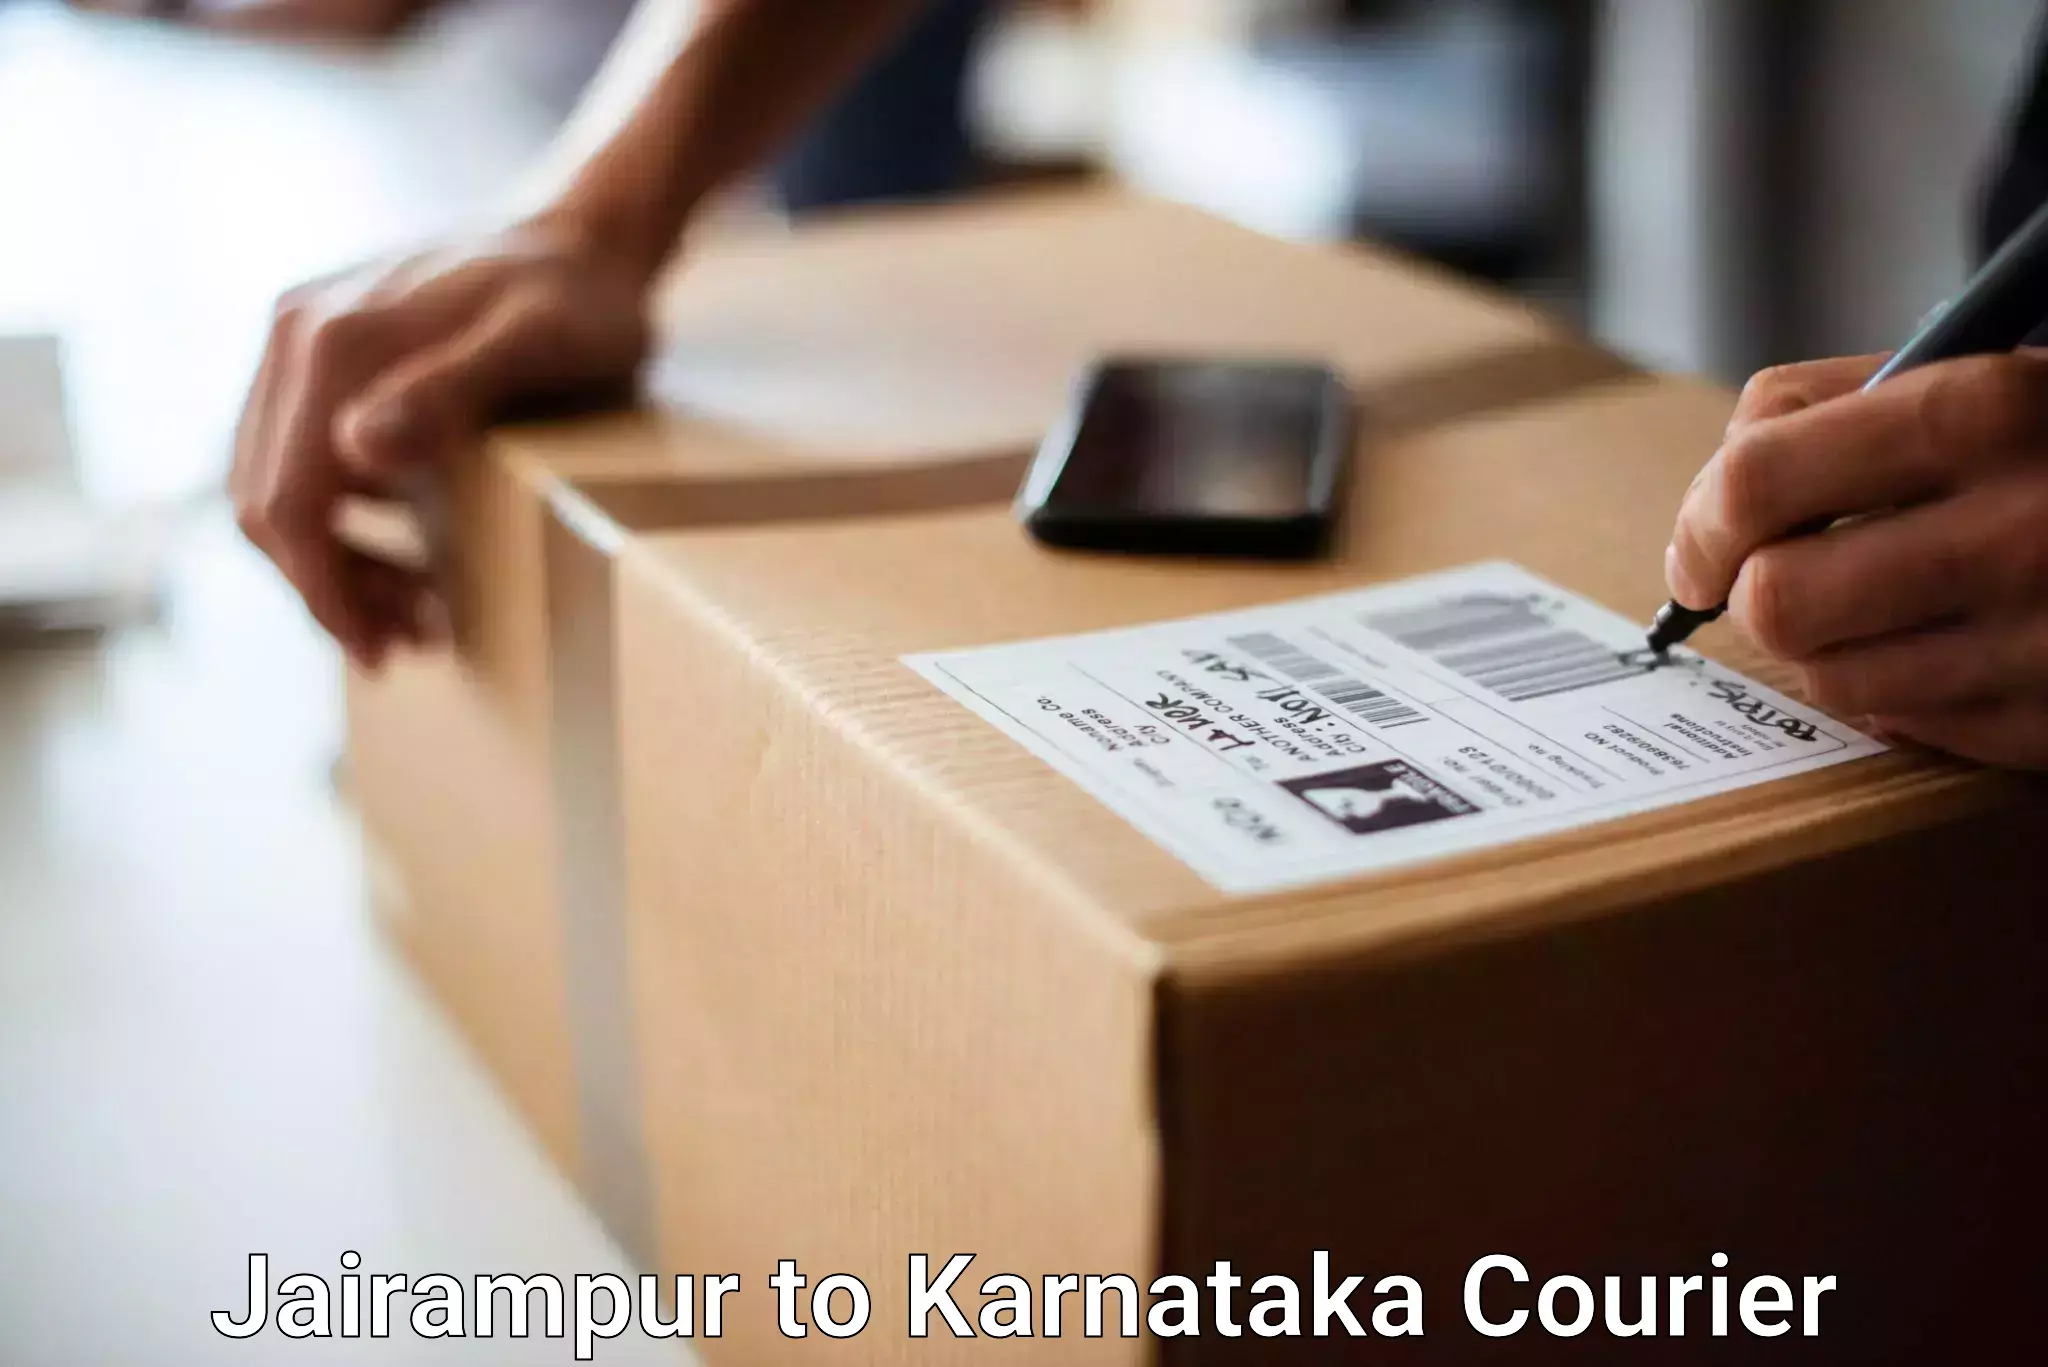 Luggage shipping consultation Jairampur to Kanjarakatte